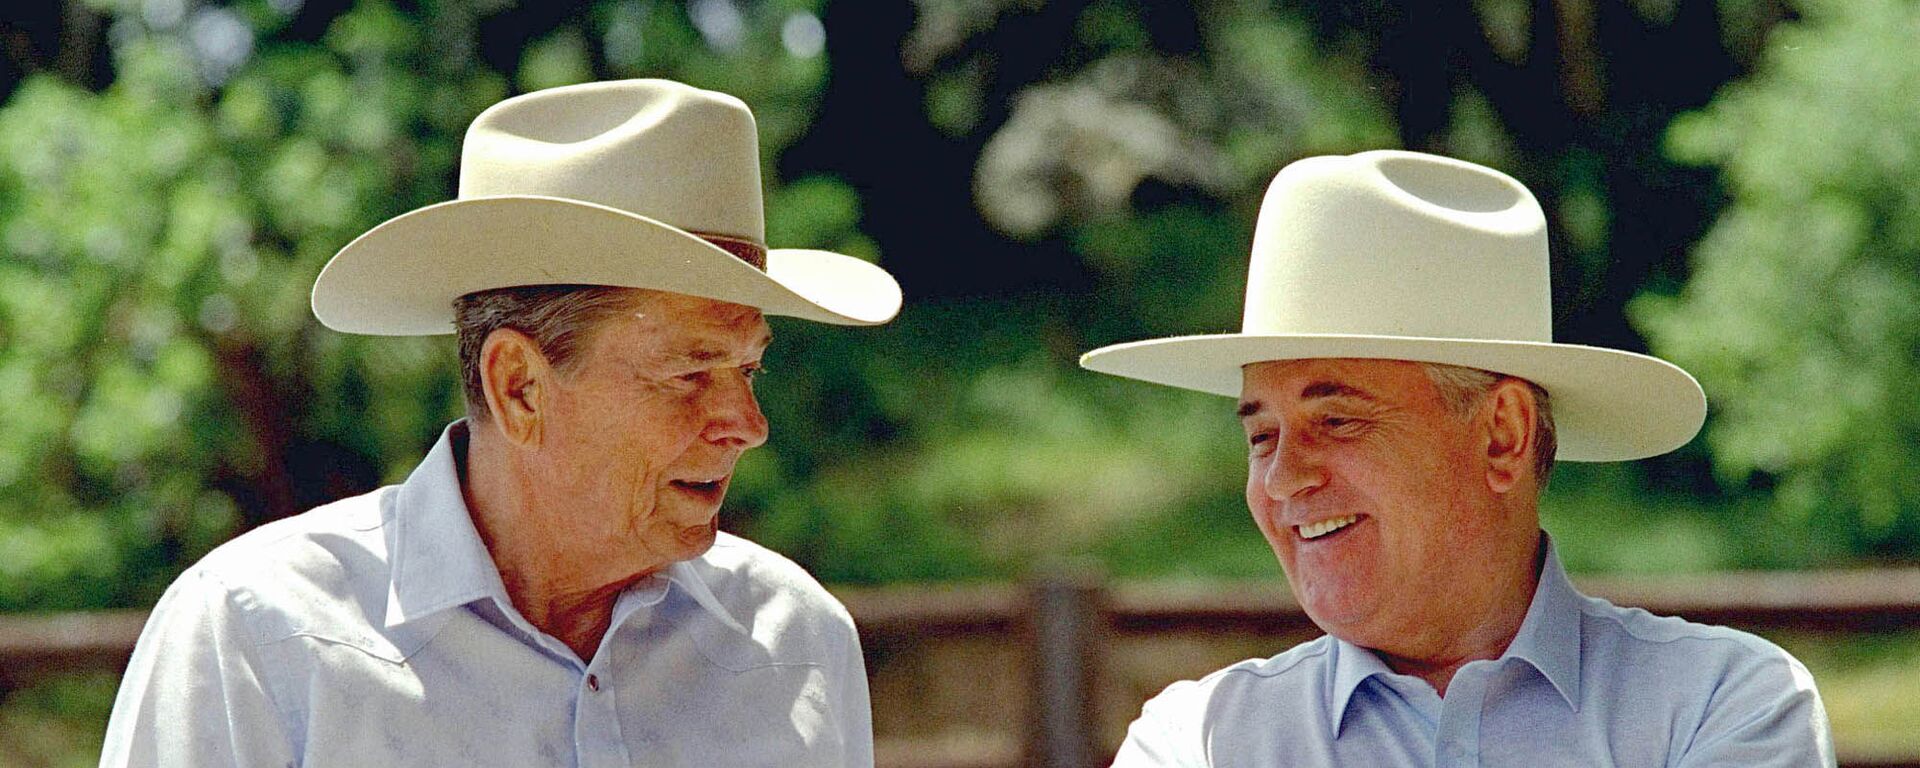 Горбачев и Рейган на ранчо в США в 1992 году - Sputnik Latvija, 1920, 03.06.2021